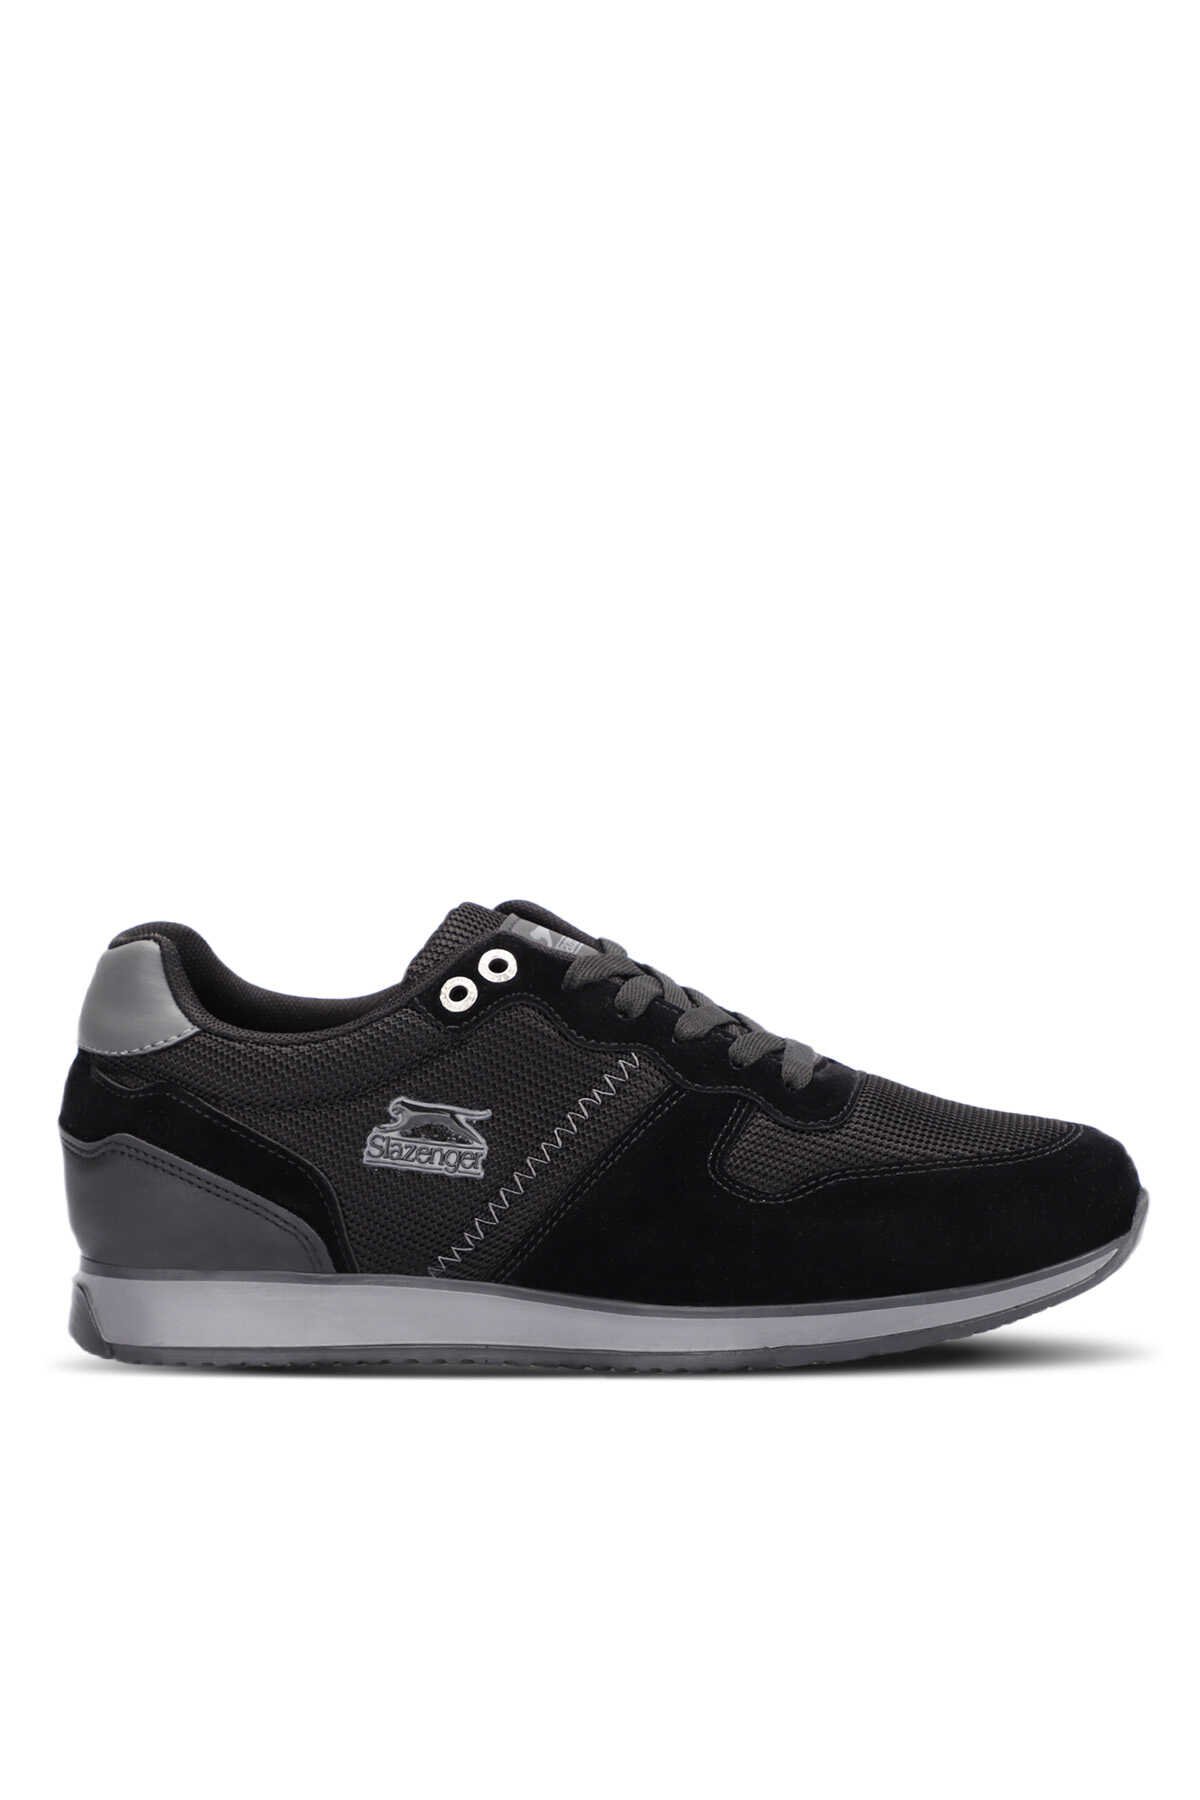 Slazenger - ORGANIZE I Sneaker Erkek Ayakkabı Siyah / Siyah